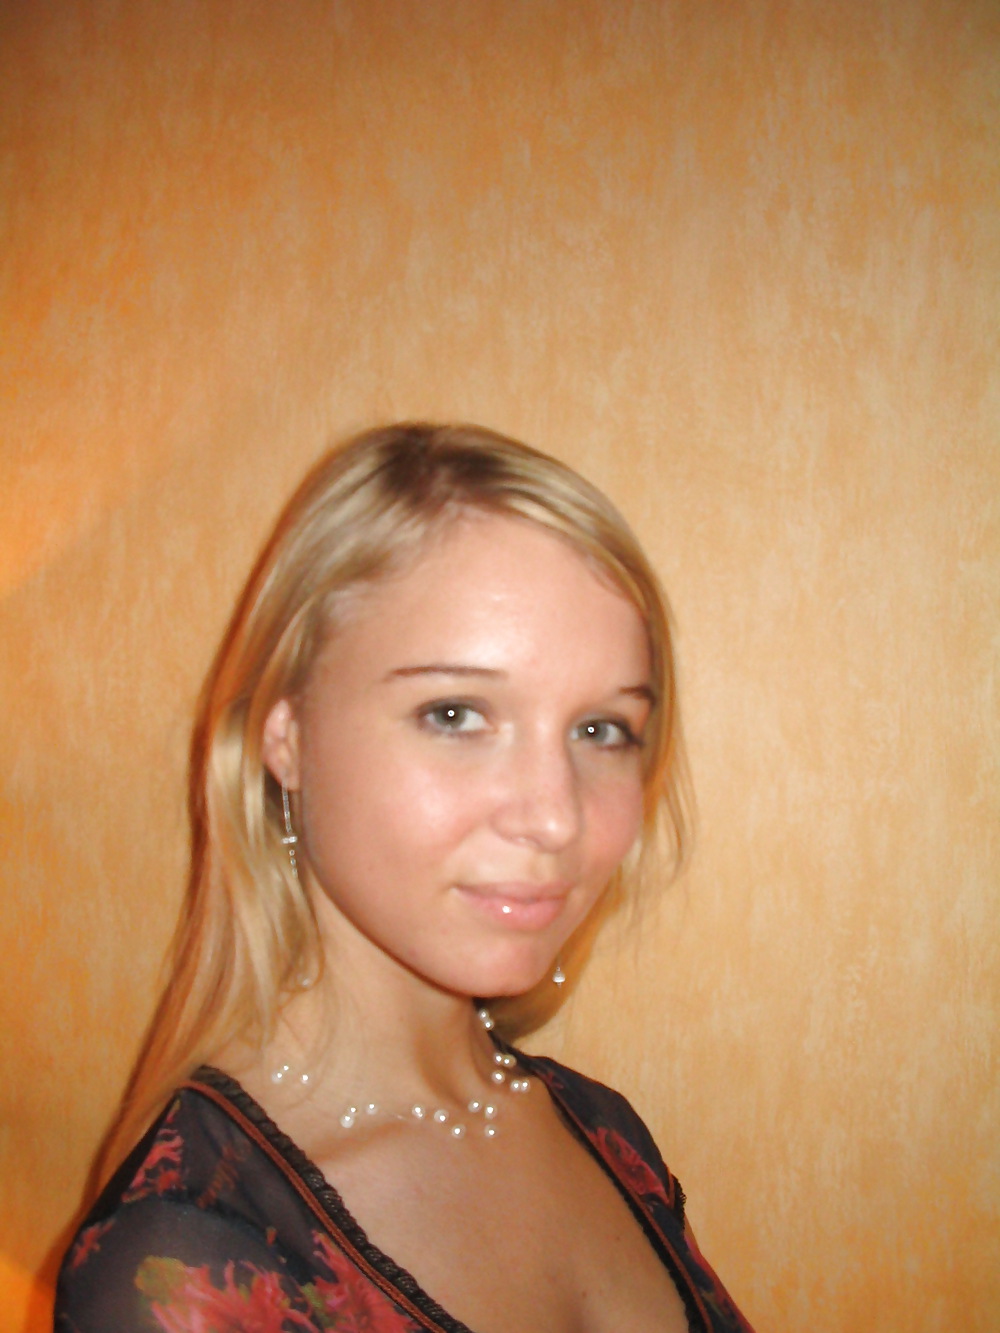 Sexy Blonde Deutsch Teenager Posiert In Dessous #24813796